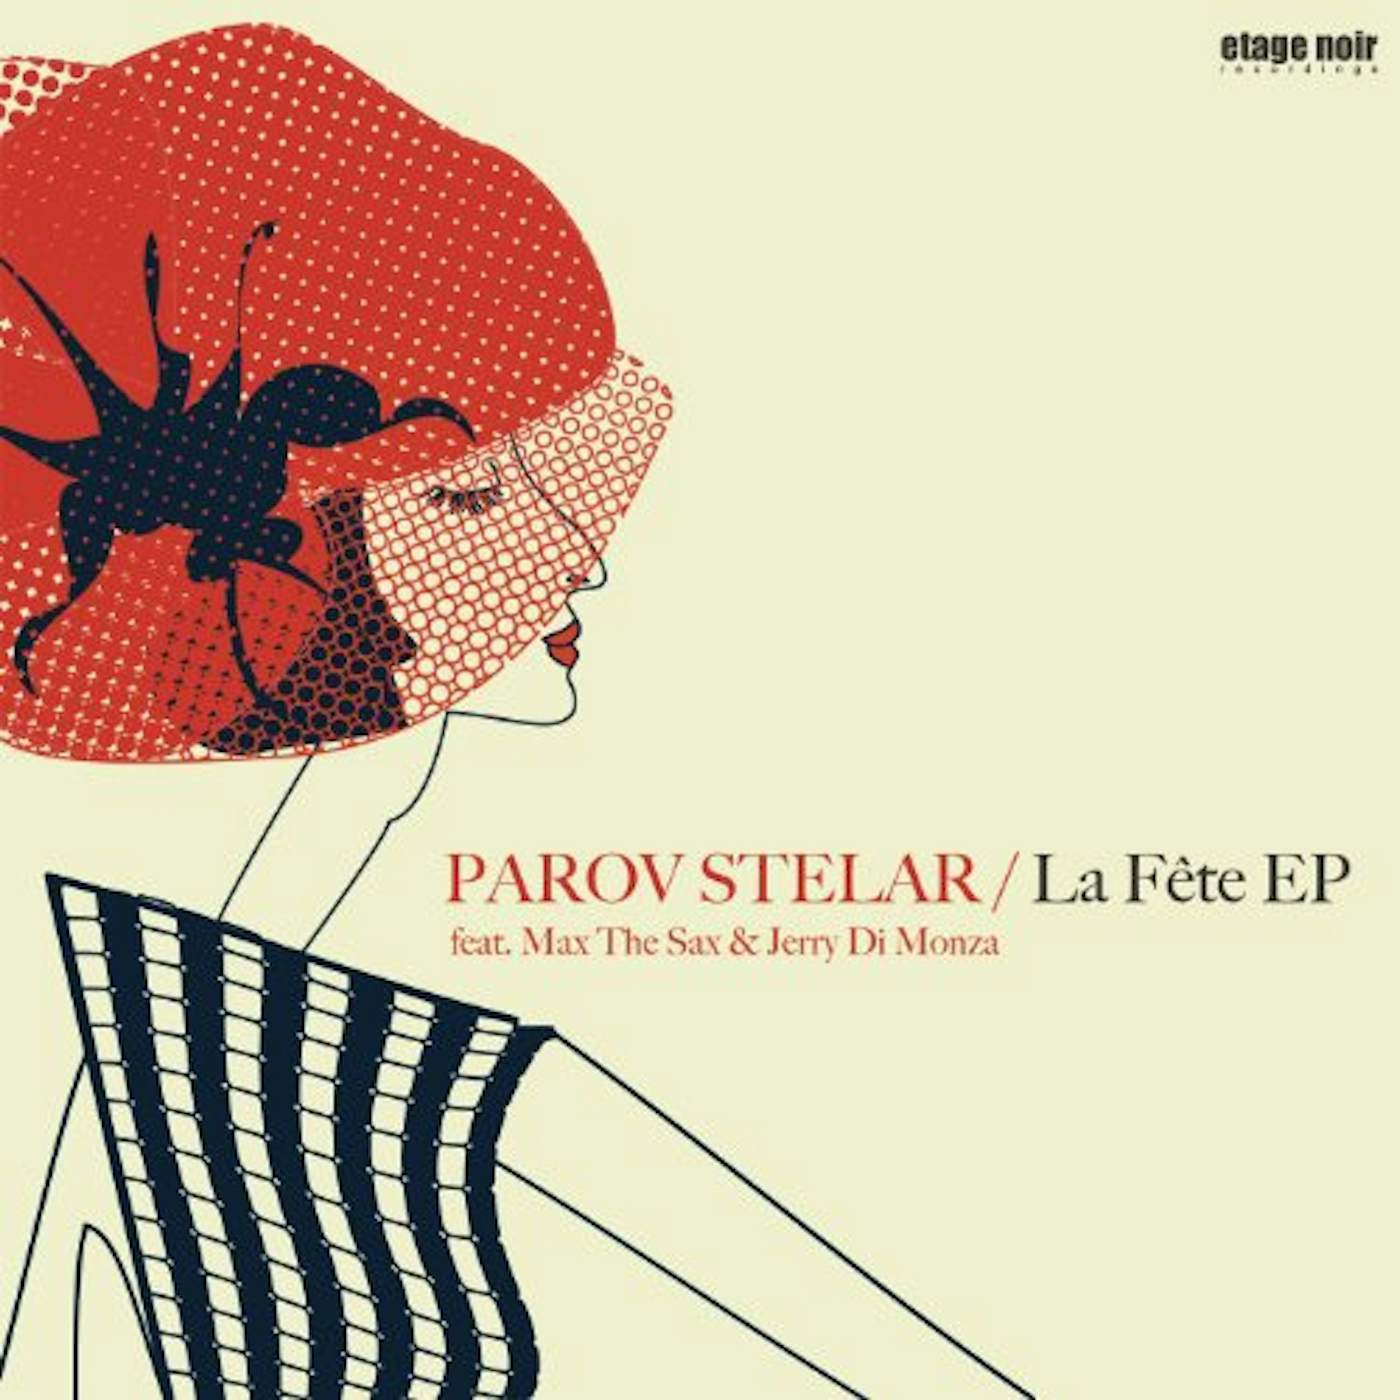 Parov Stelar LA FETE Vinyl Record